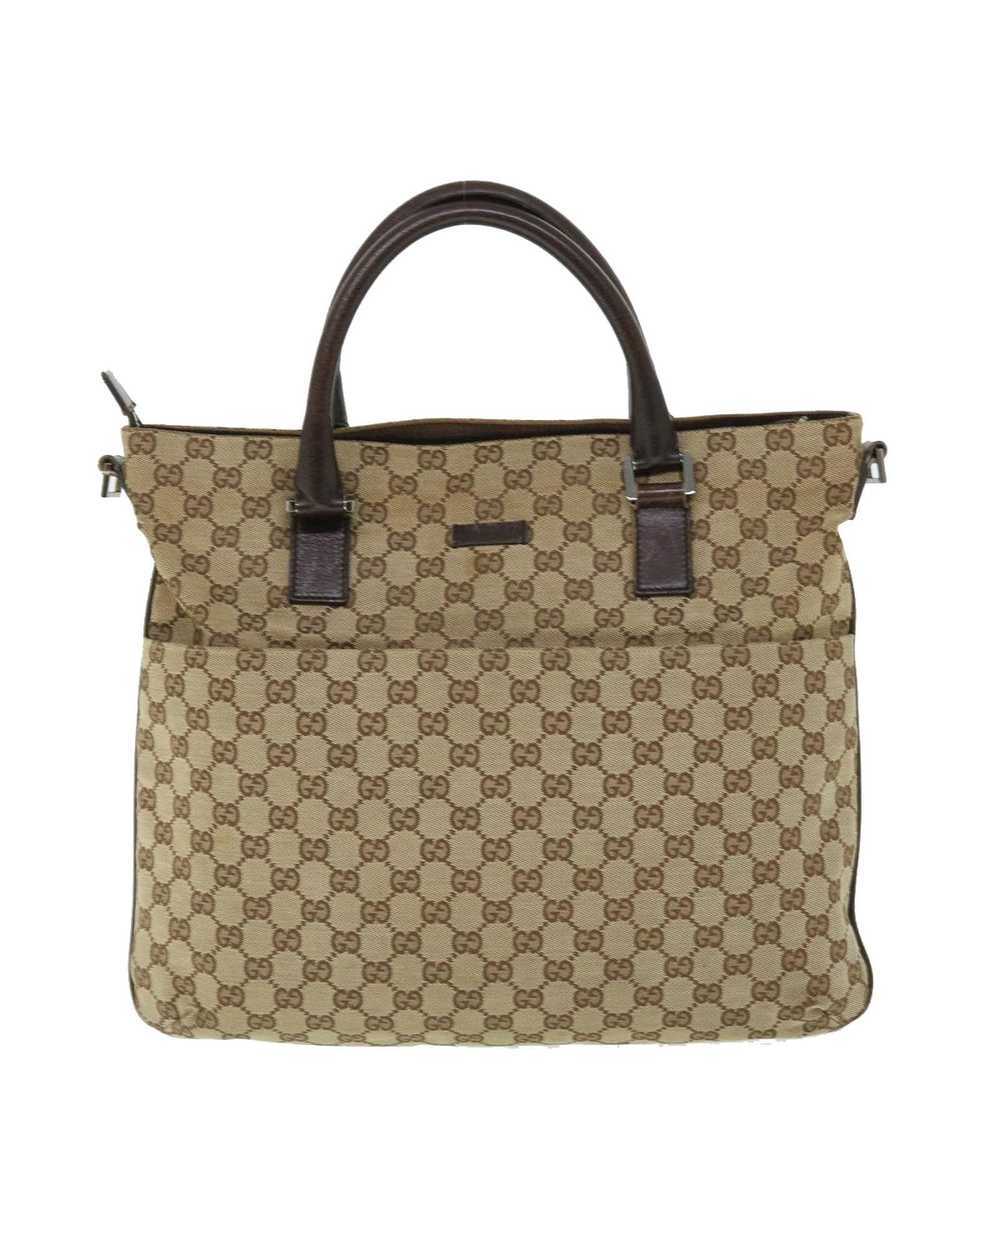 Gucci Beige Canvas Shoulder Bag with GG Design - image 2